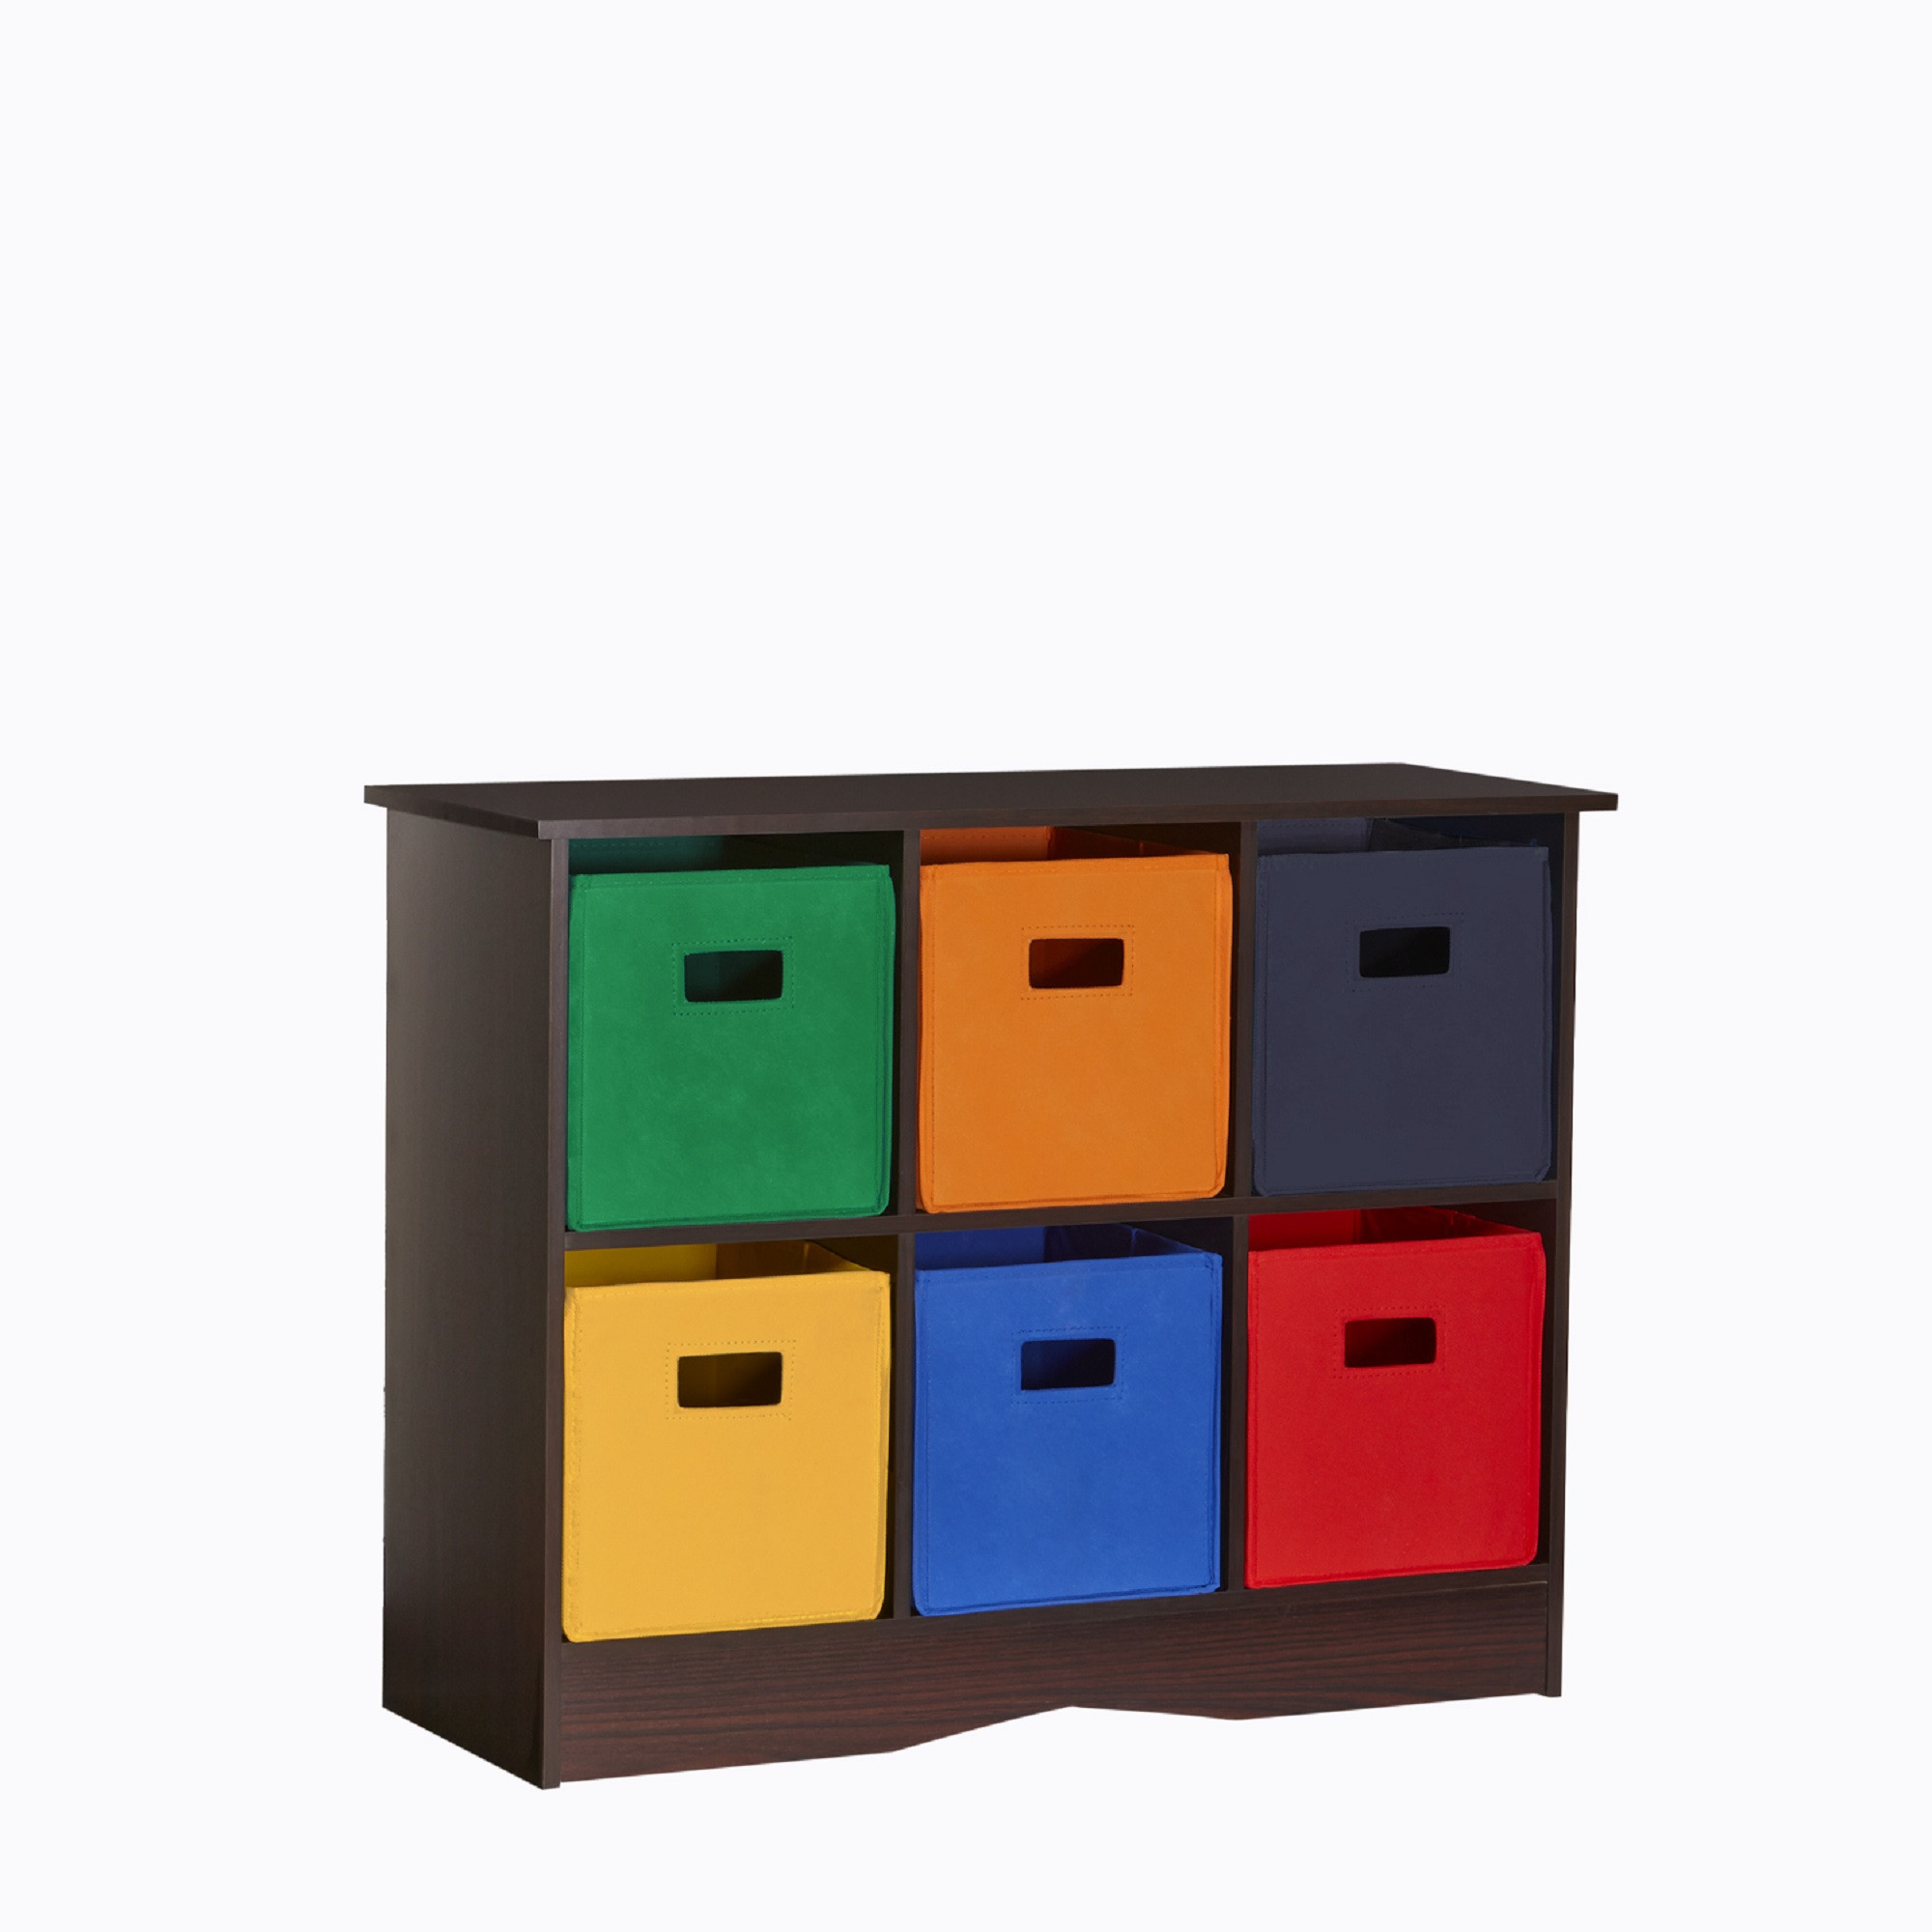 Best ideas about Kids Storage Cabinet
. Save or Pin RiverRidge Kids 6 Bin Storage Cabinet Espresso Primary Now.